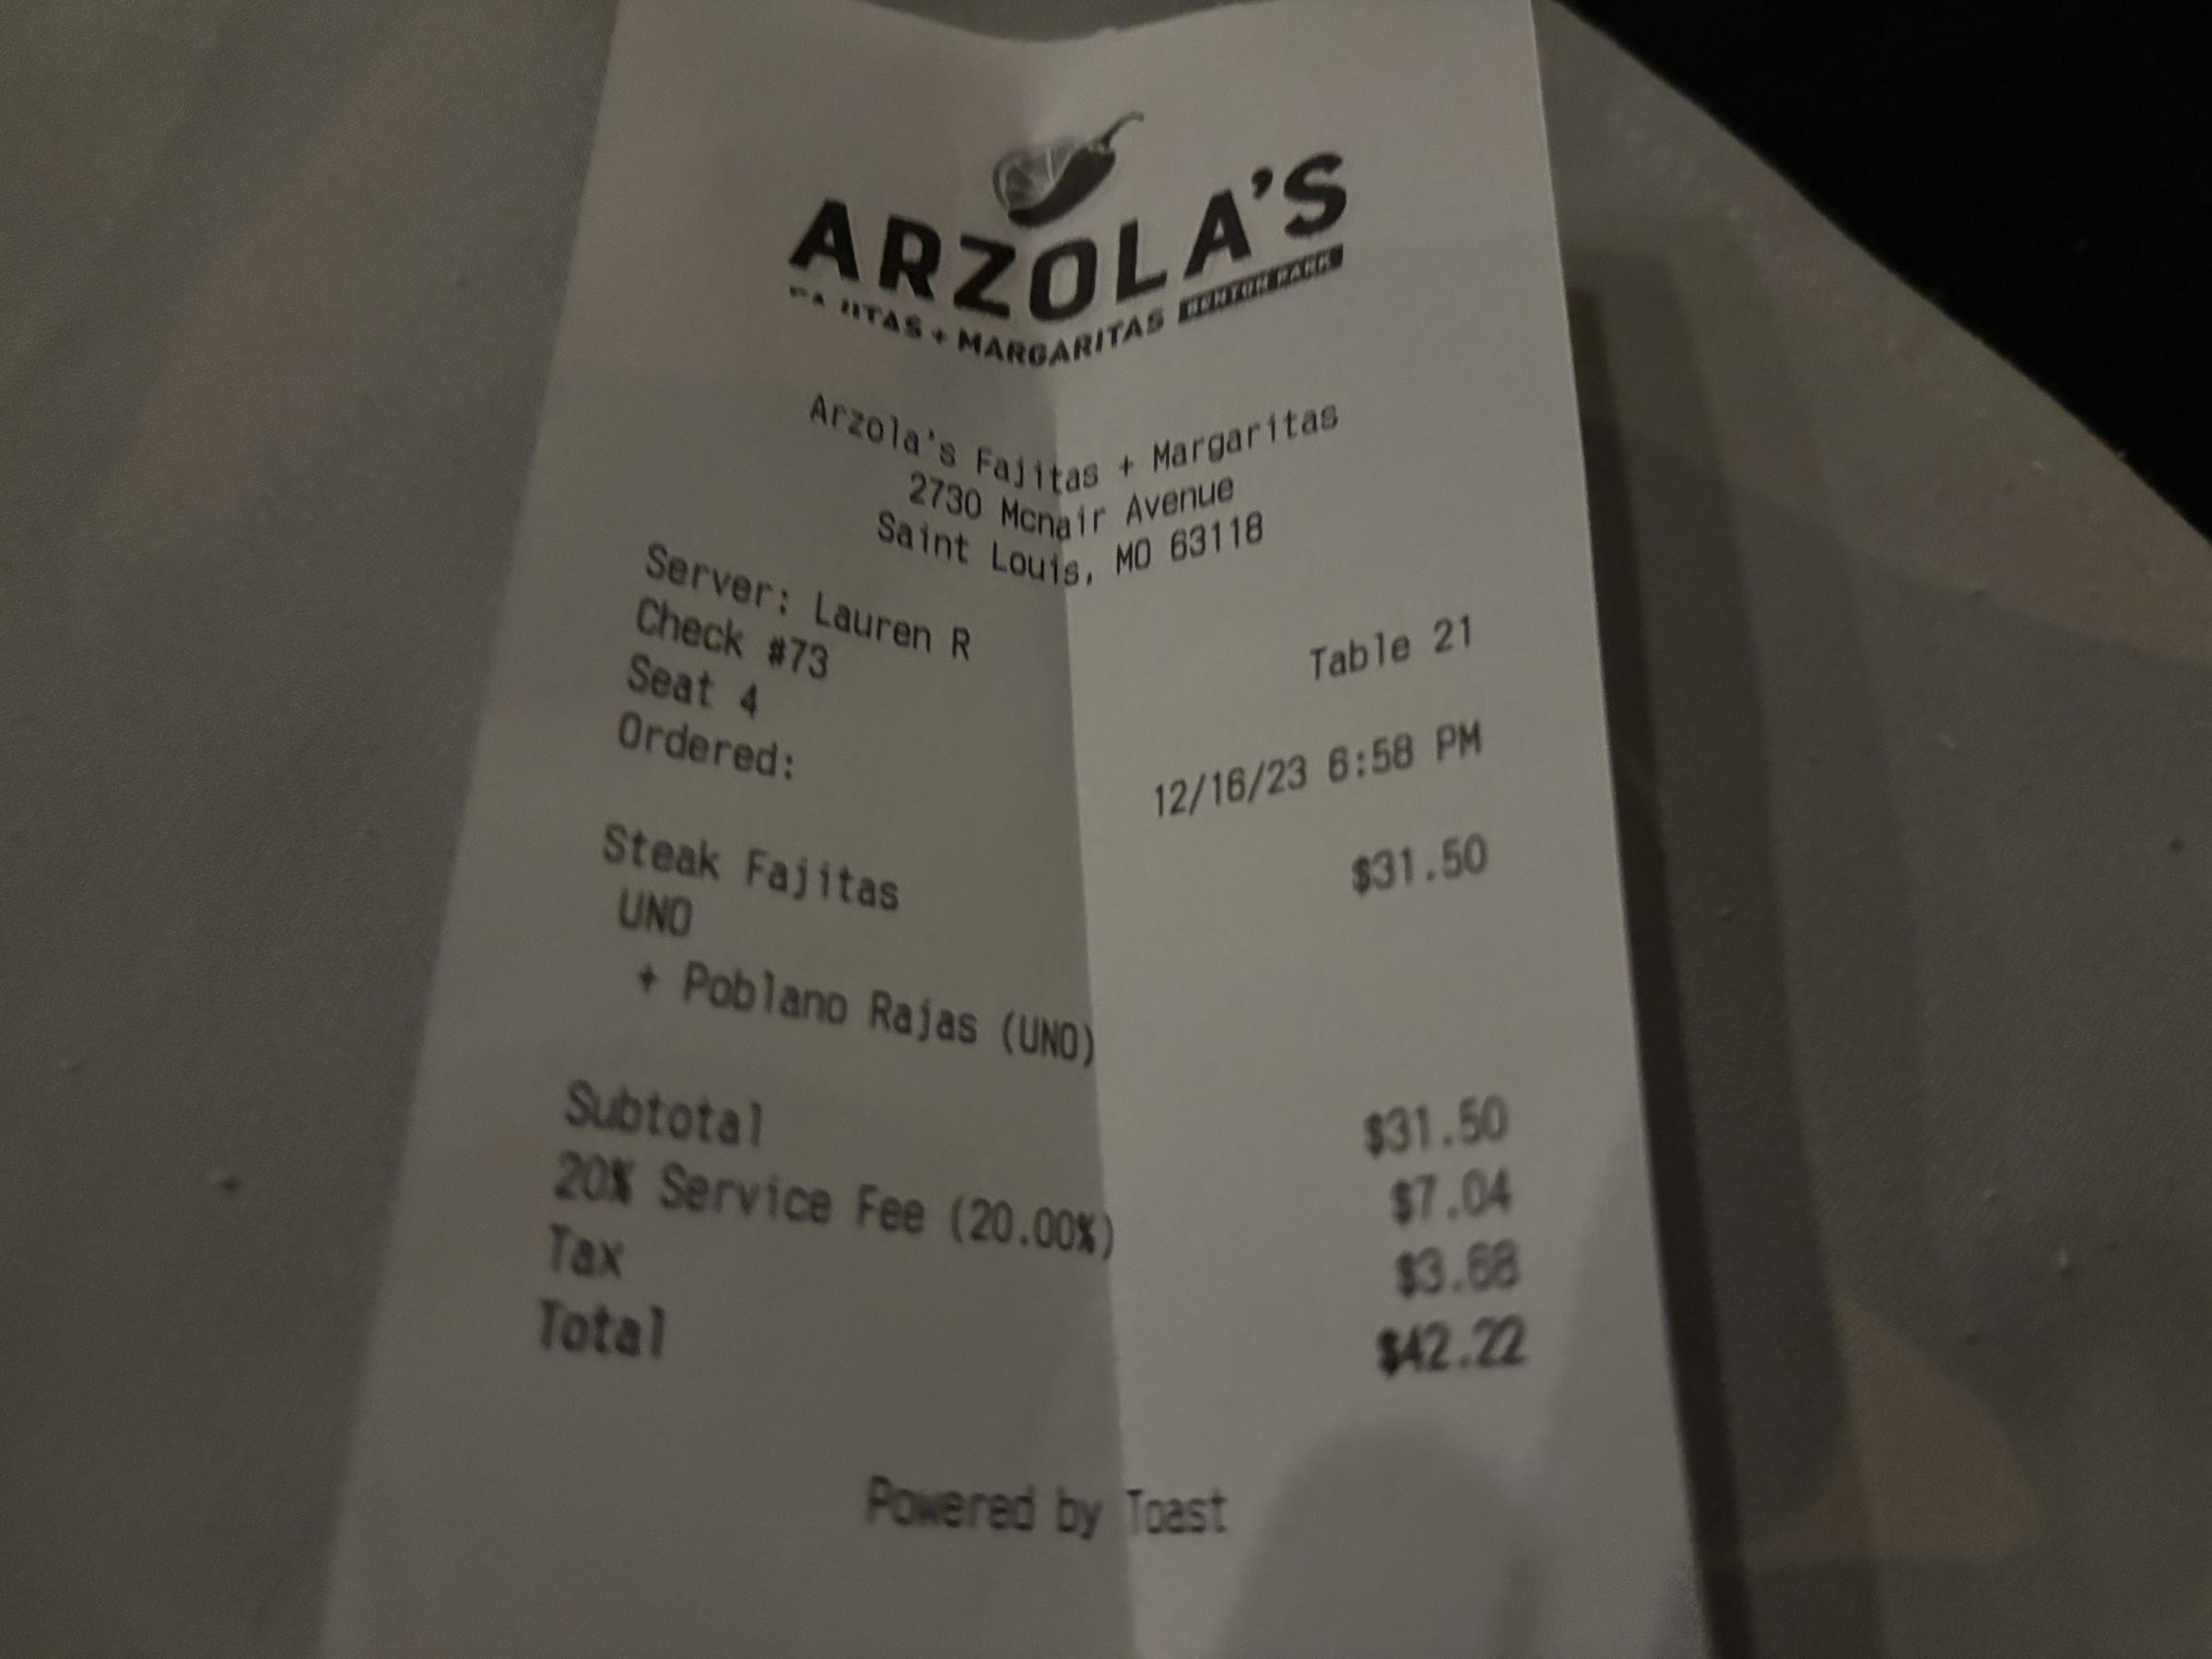 Arzolas Fajitas + Margaritas receipt